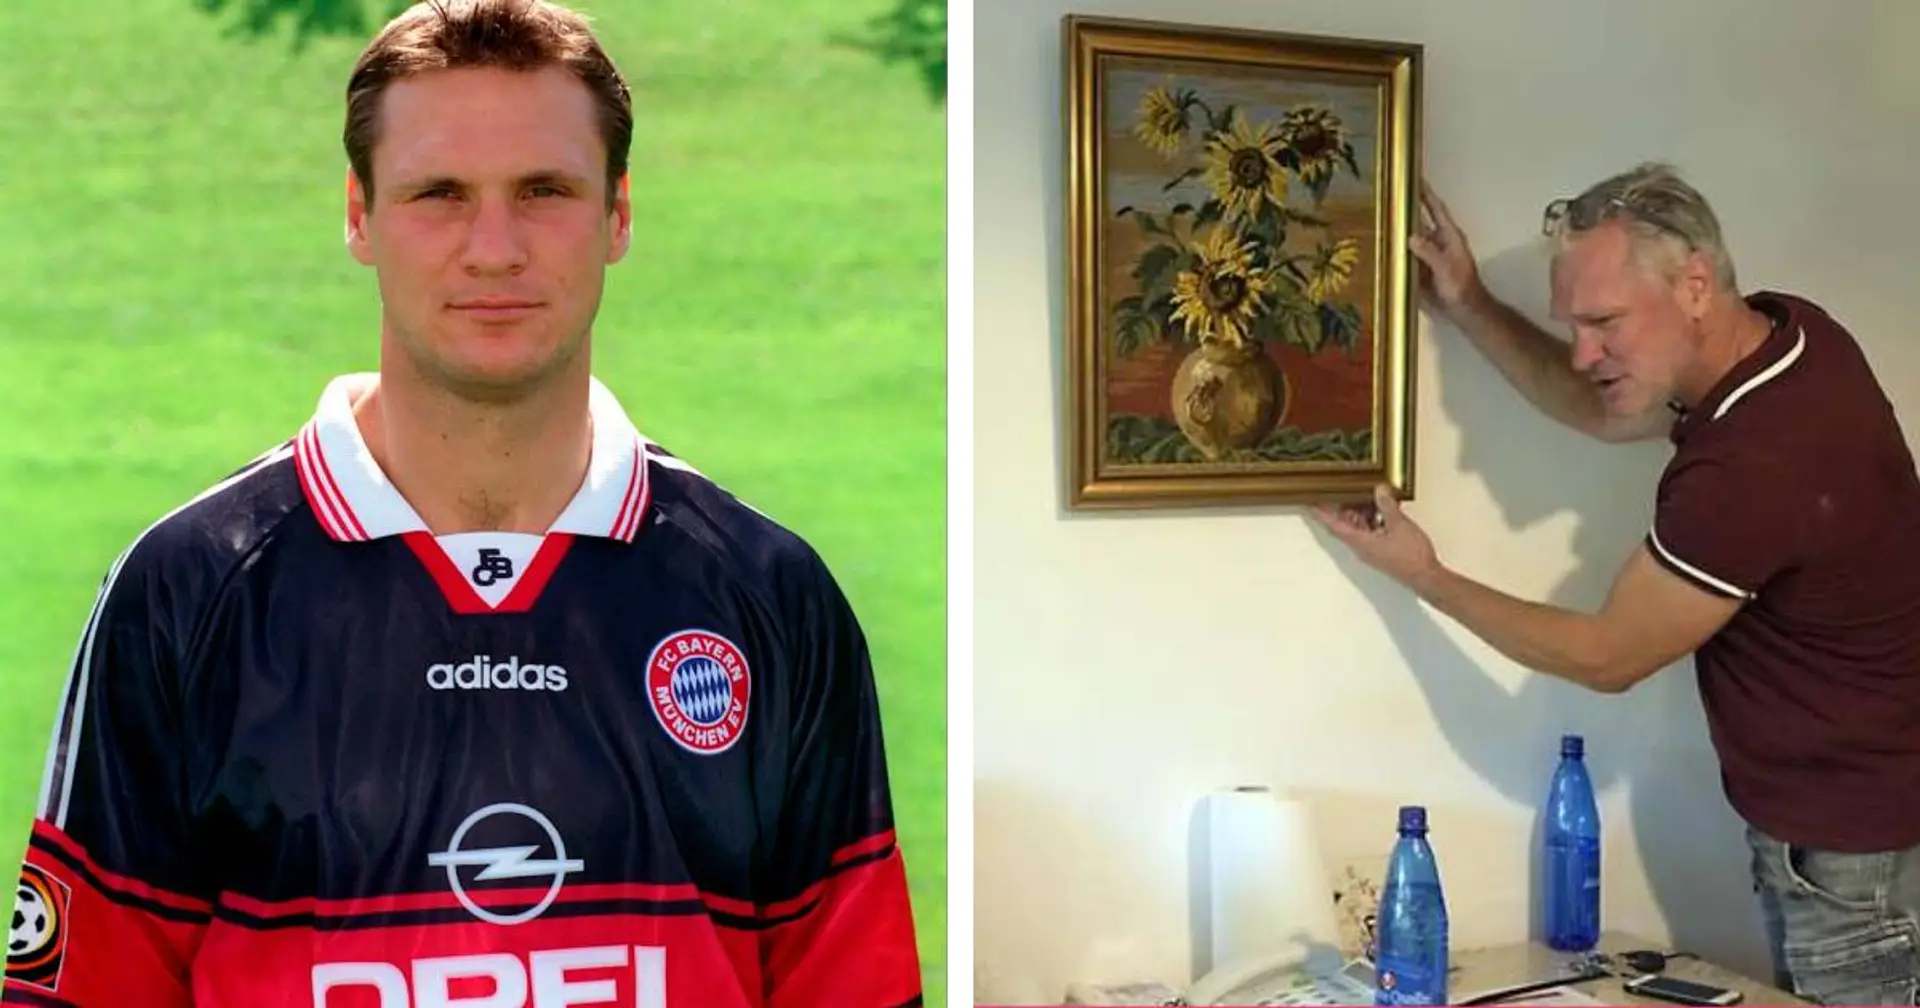 Kurzes Intermezzo bei Bayern, heute Hausmeister: Erinnert ihr euch an Dennis Grassow?